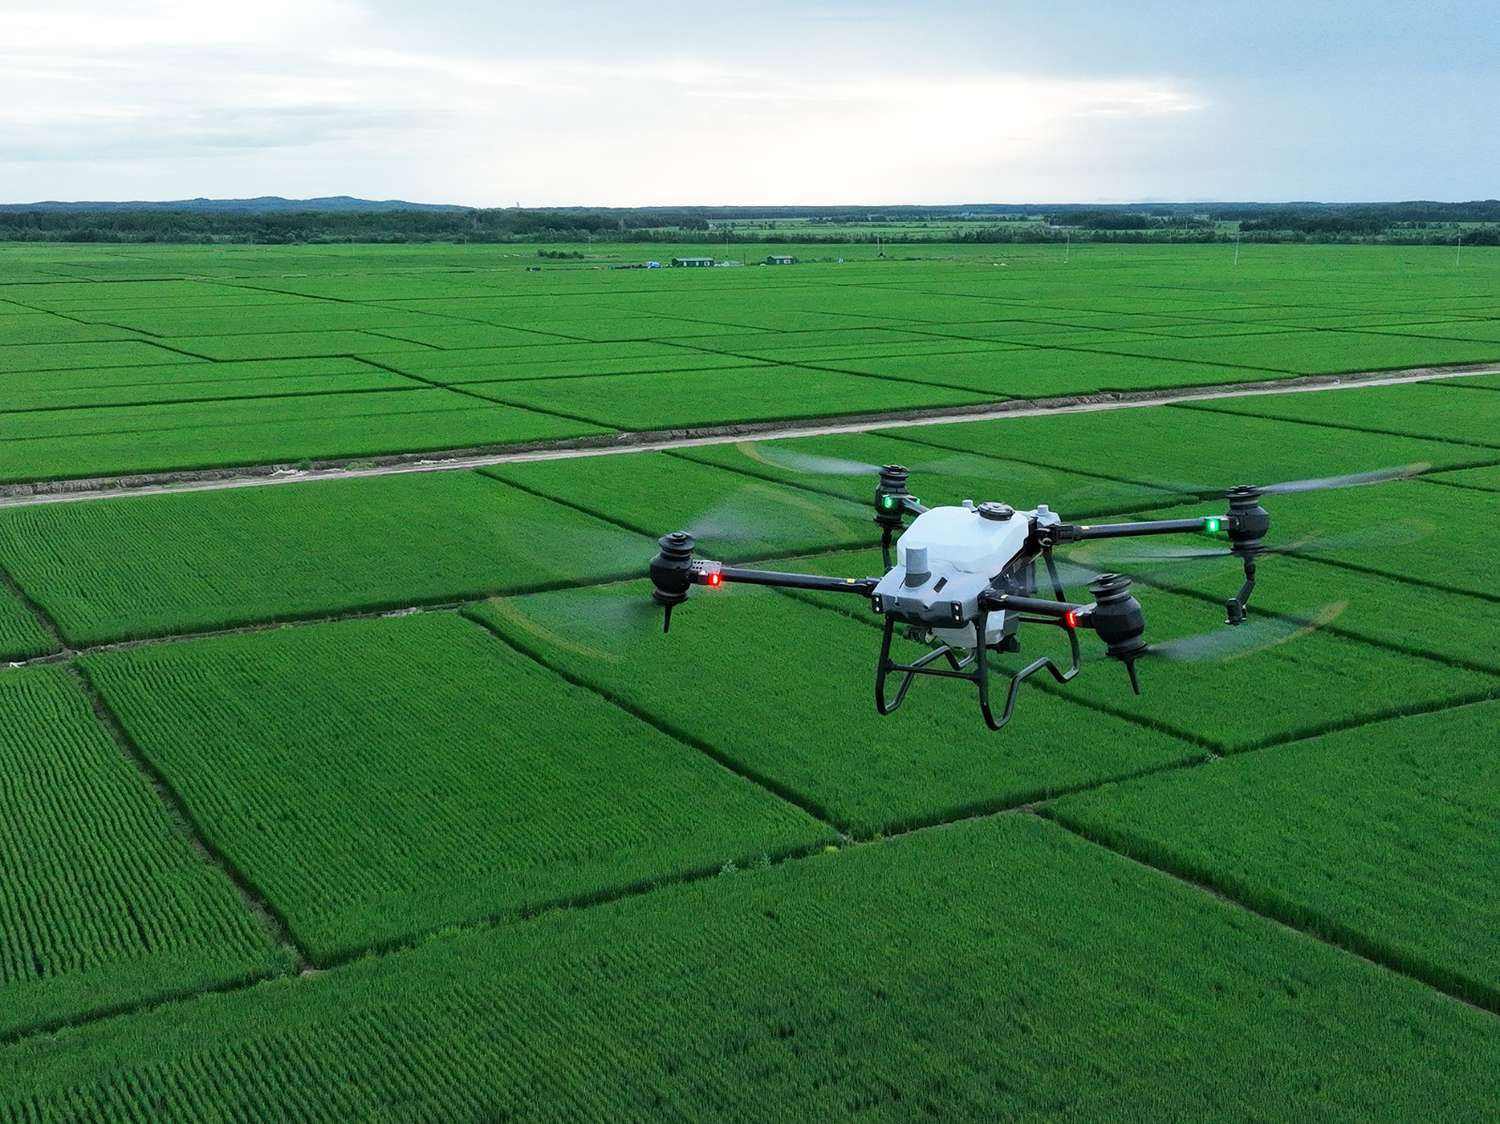 Akron revoluciona San Francisco Expone con los drones agrícolas DJI Agras